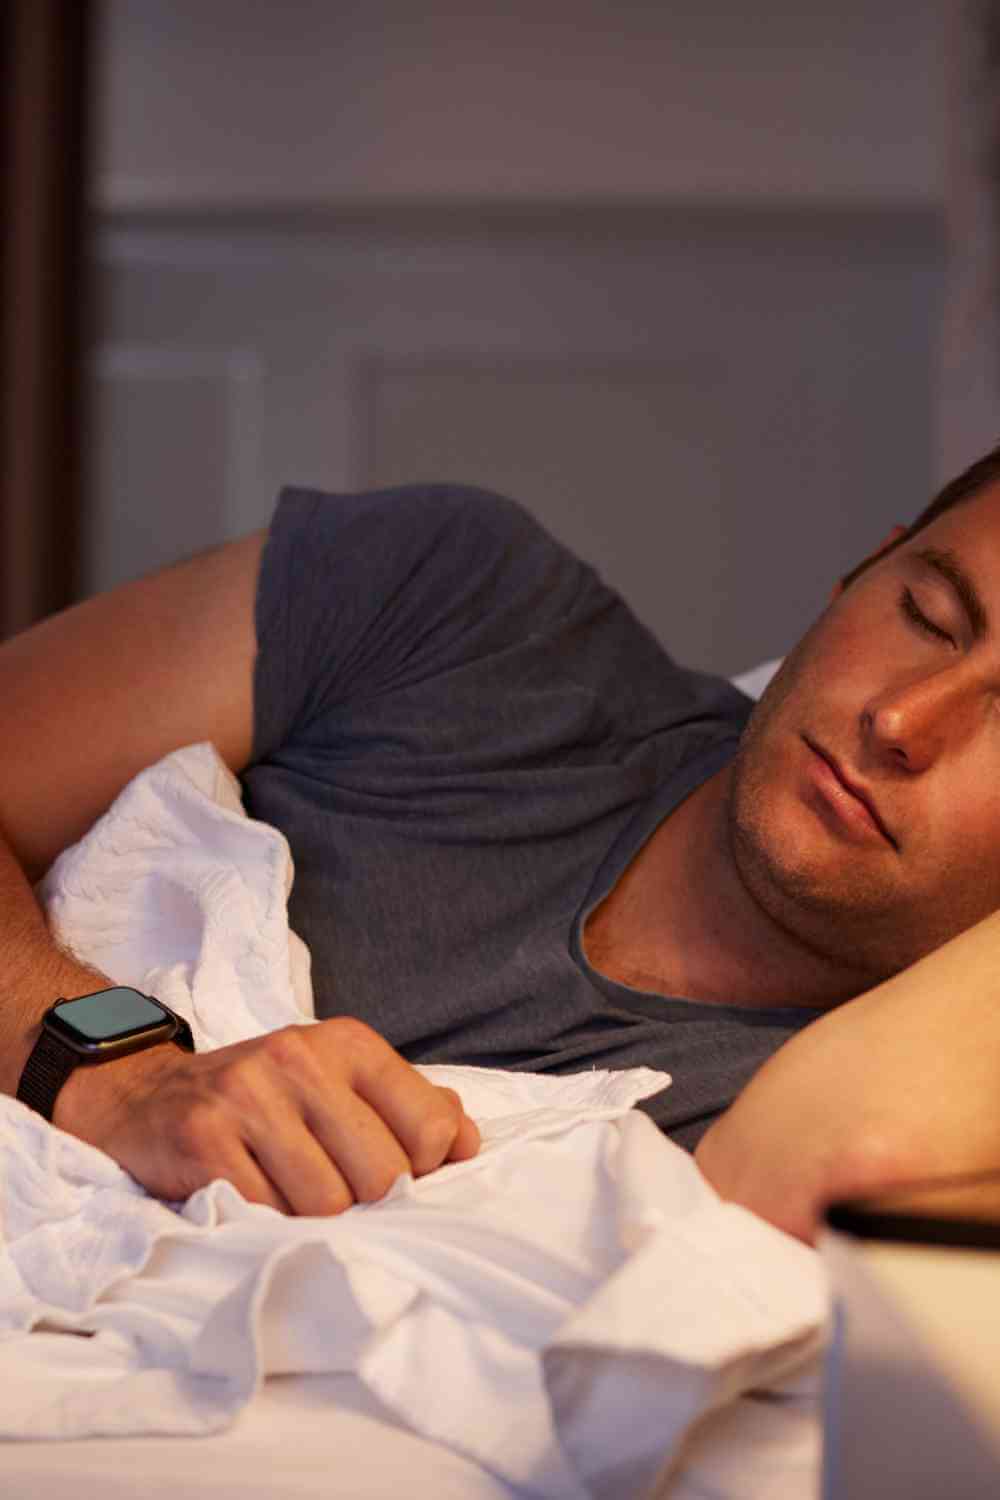 Can A Smart Watch Detect Sleep Apnea